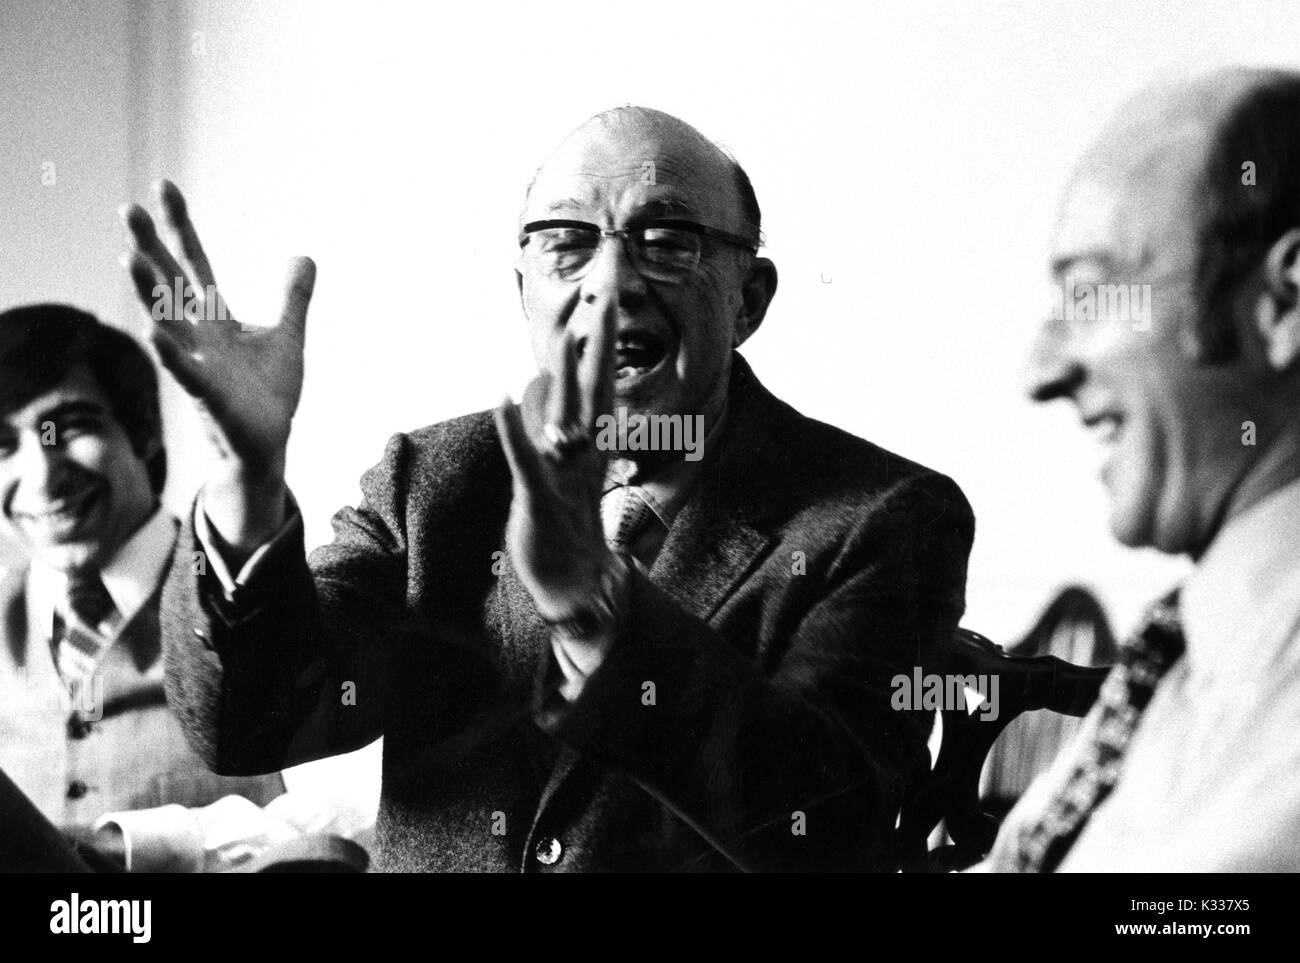 Portrait candide de l'Université Johns Hopkins, président Milton S. Eisenhower (à gauche) avec des gestes tout en parlant de chiffres non identifiés au cours de la Milton S. Eisenhower 1971 Symposium, une série de conférences de l'Université John Hopkins, à Baltimore, Maryland, 1971. Banque D'Images